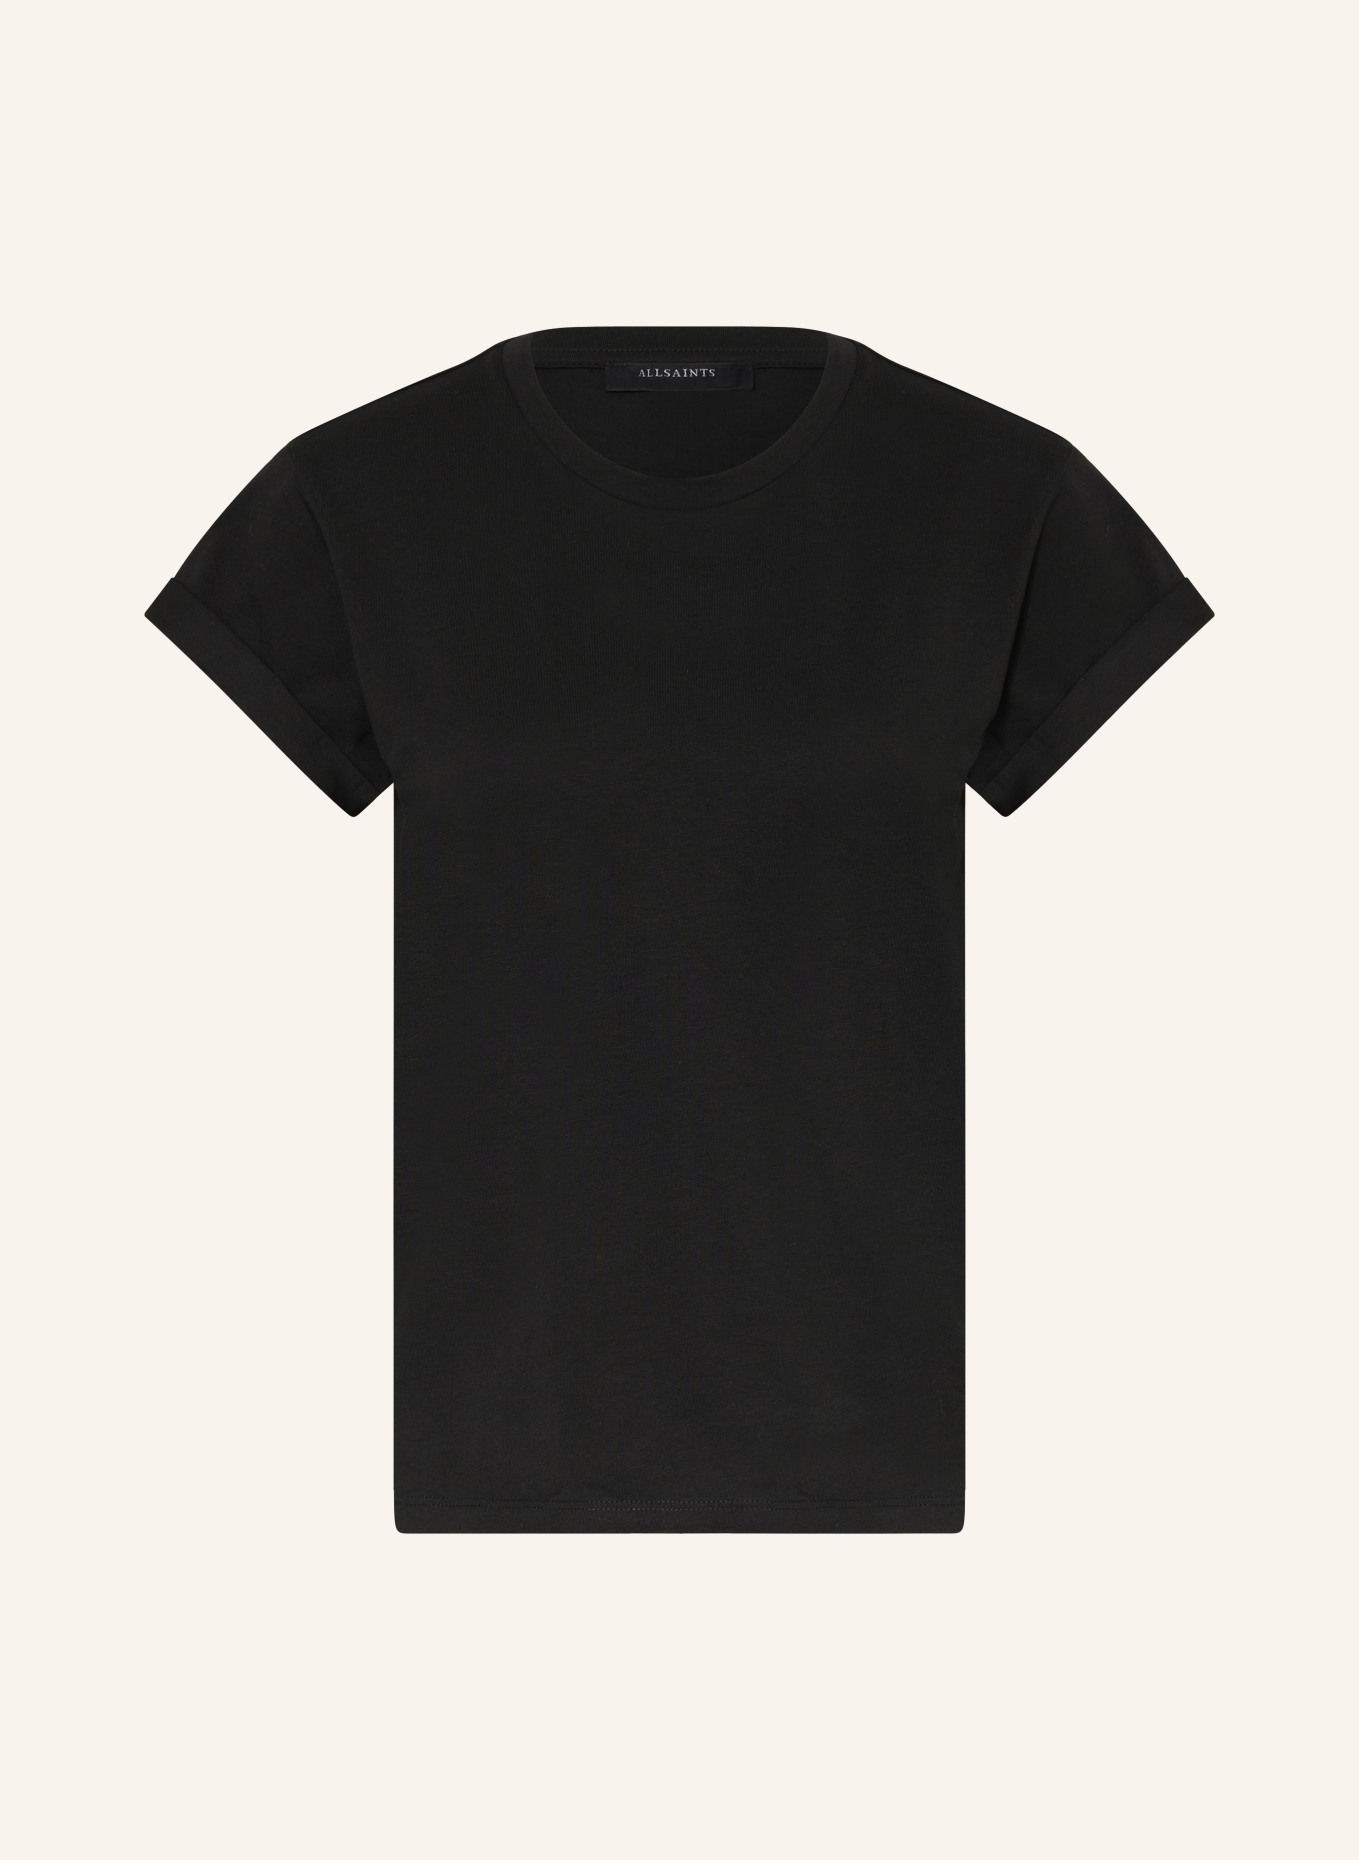 ALLSAINTS T-Shirt ANNA, Farbe: SCHWARZ/ WEISS (Bild 1)